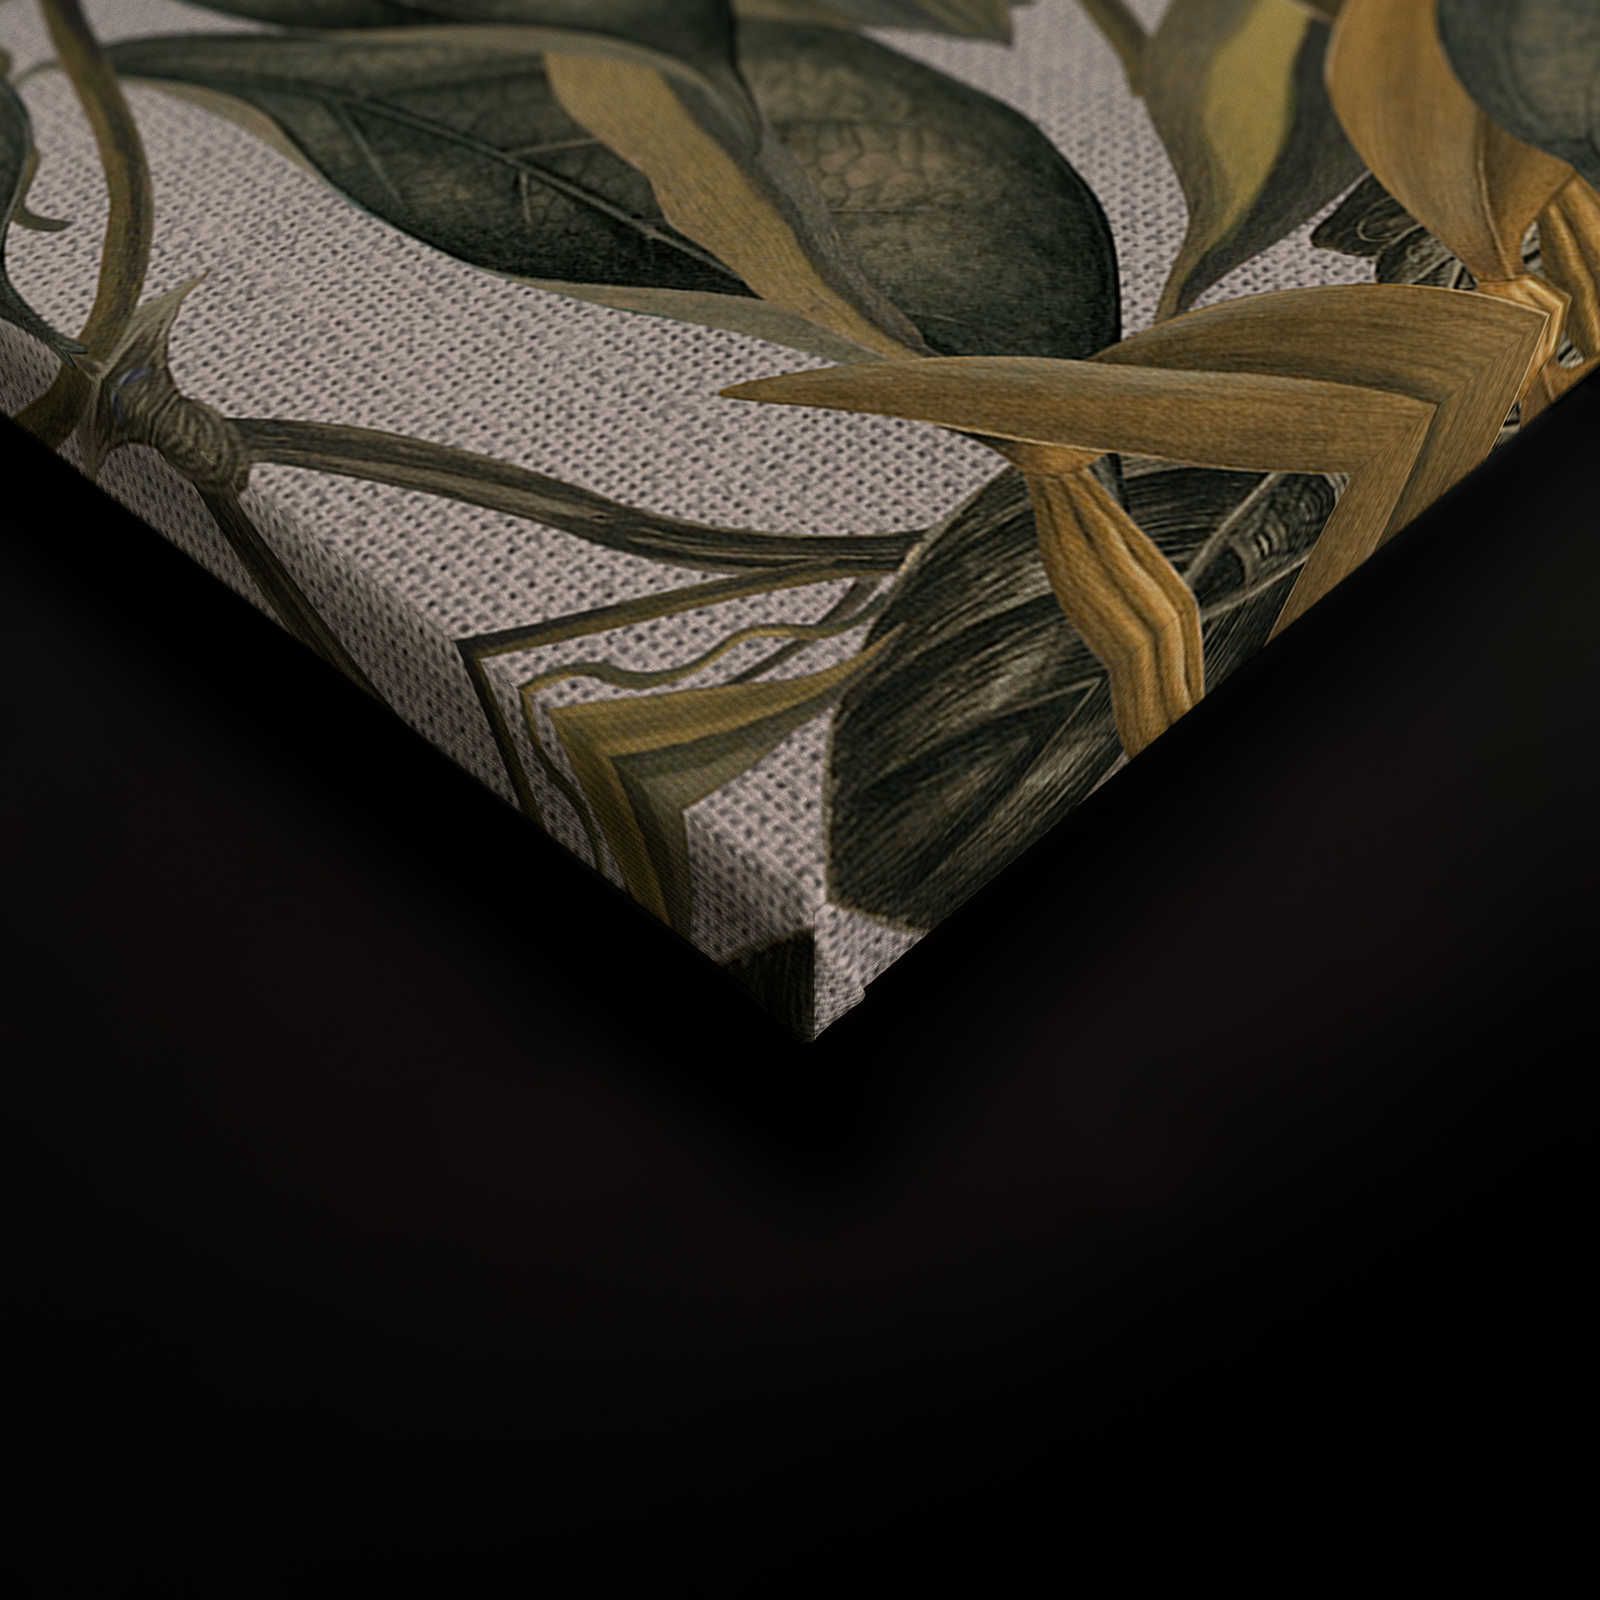             Tableau toile style botanique fleurs, feuilles & look textile - 1,20 m x 0,80 m
        